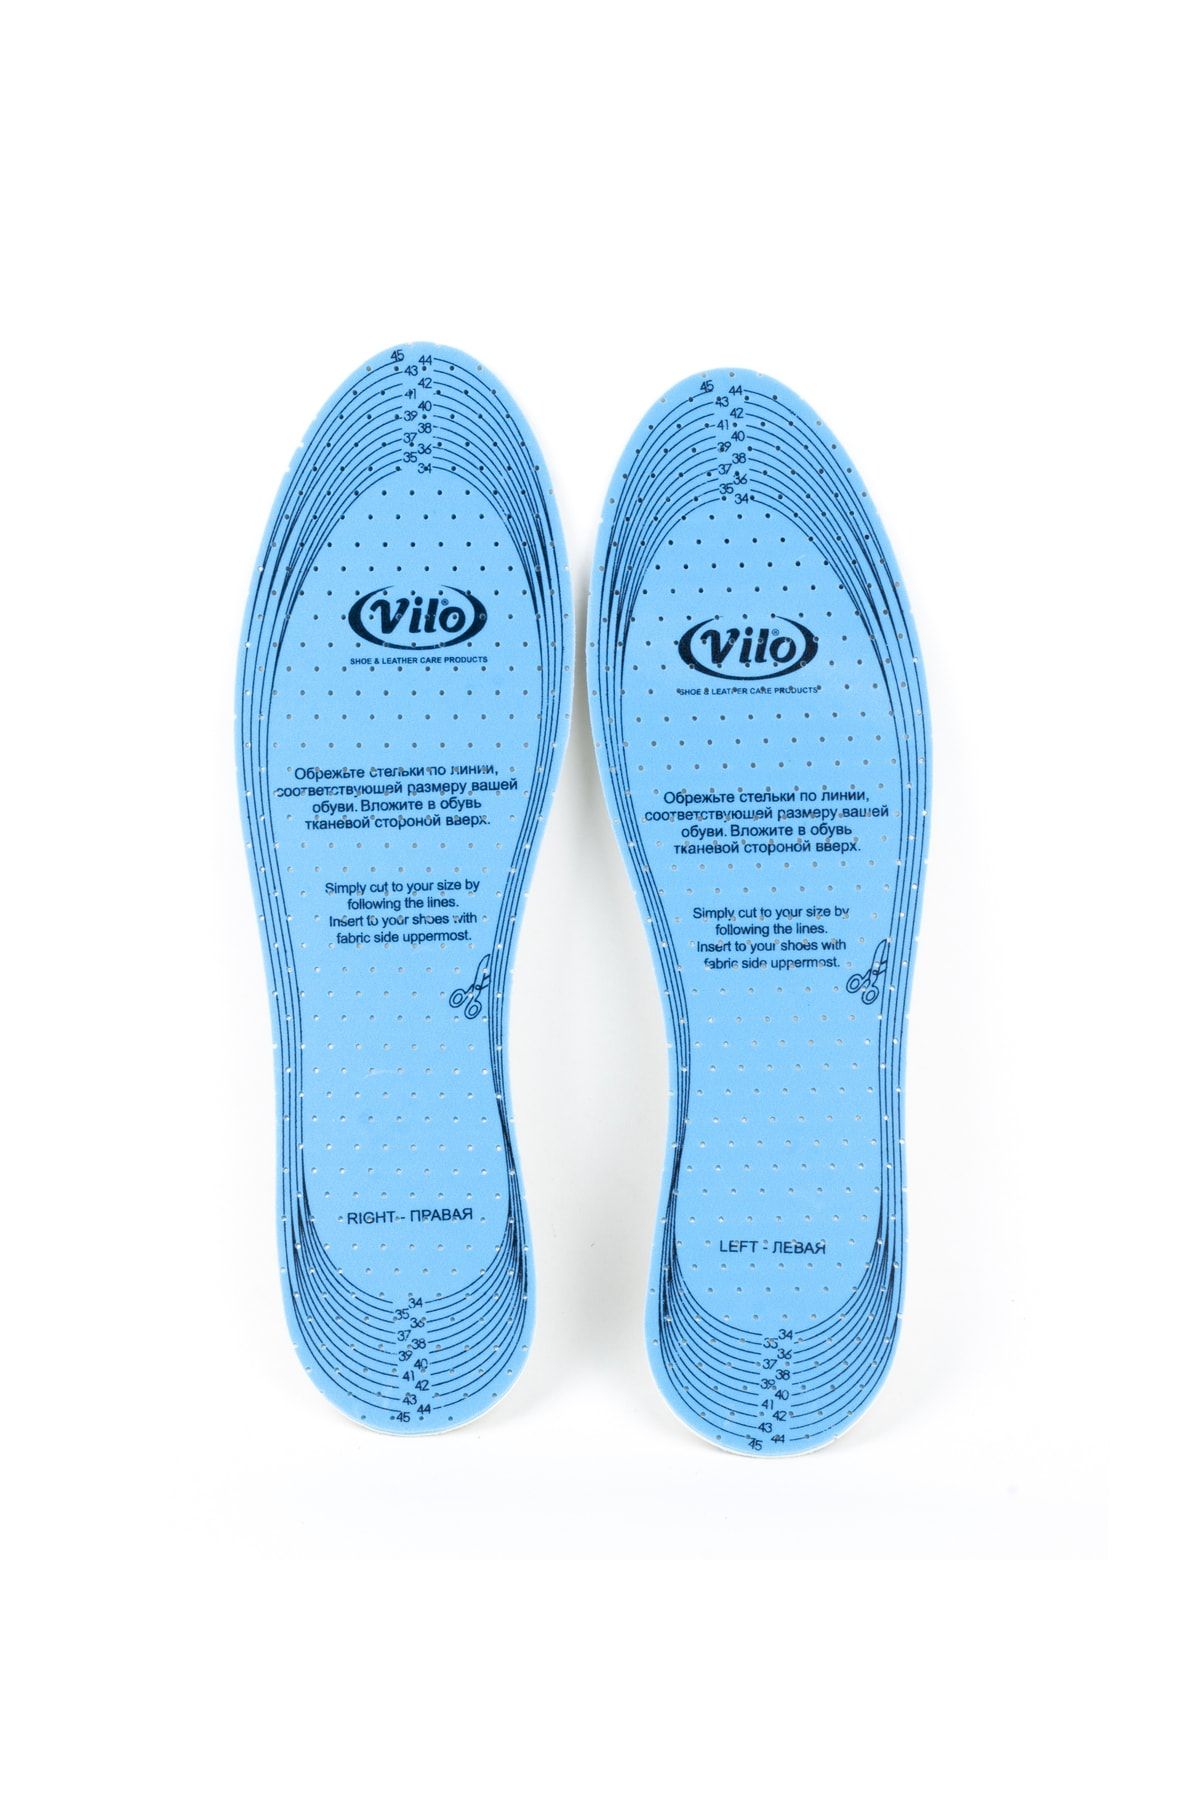 AiryFooT Aktifresh Anti Bakteriyel Ayakkabı Tabanlığı, Nefes Alabilen Iç Astar